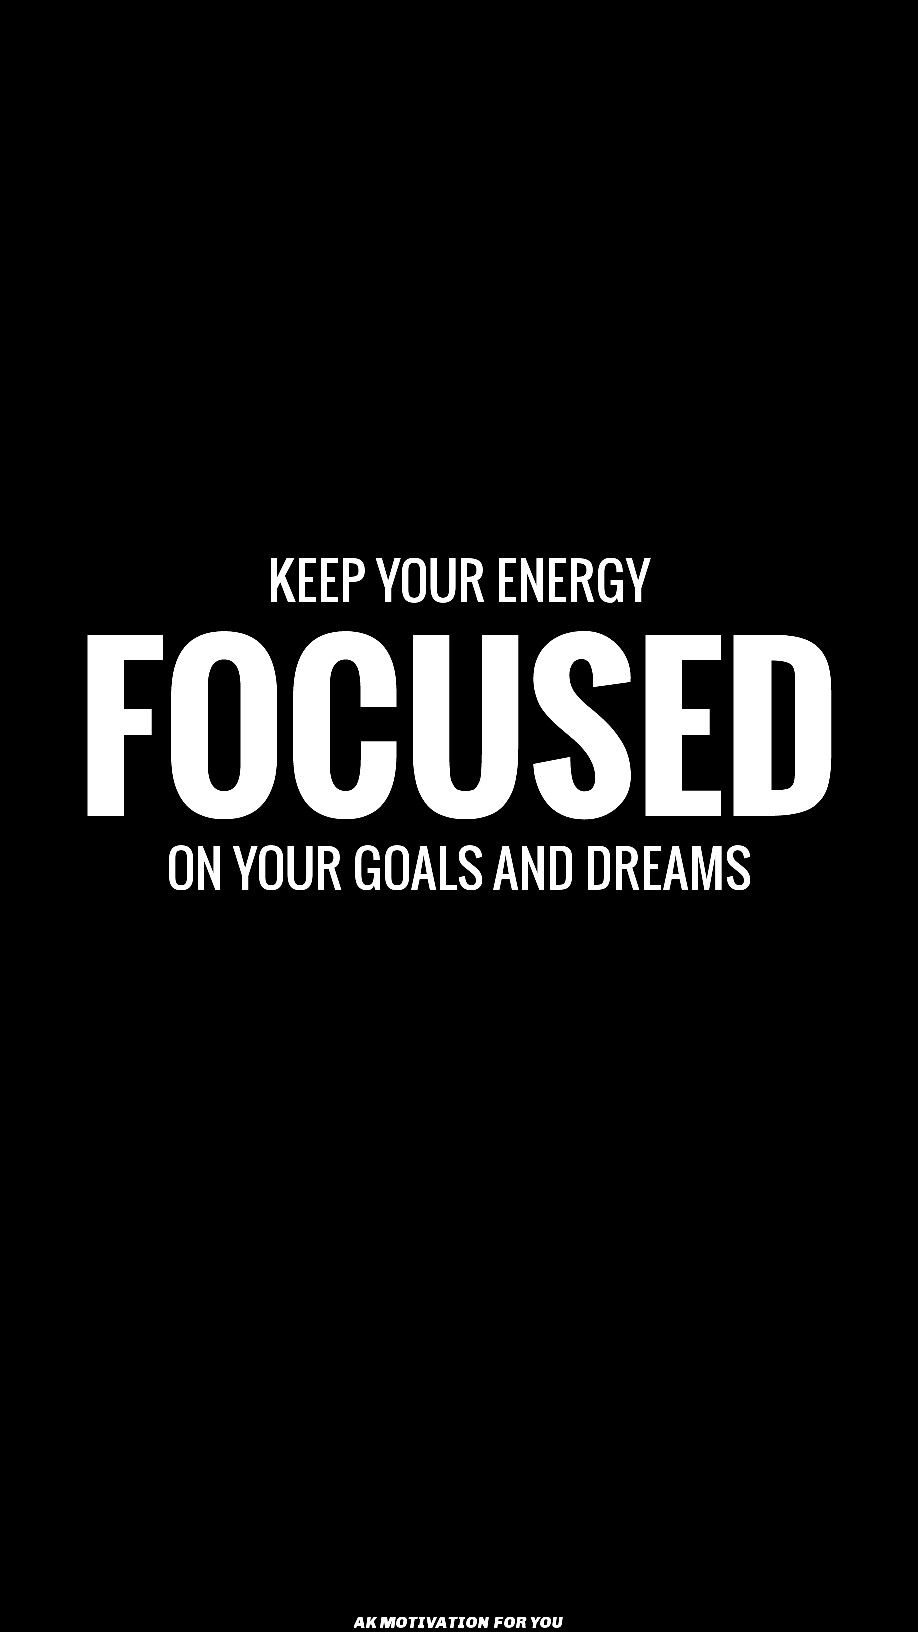 Focus motivation quote wallpaper 720p. Isnpirational quotes, Motivational quotes for life, Study motivation quotes